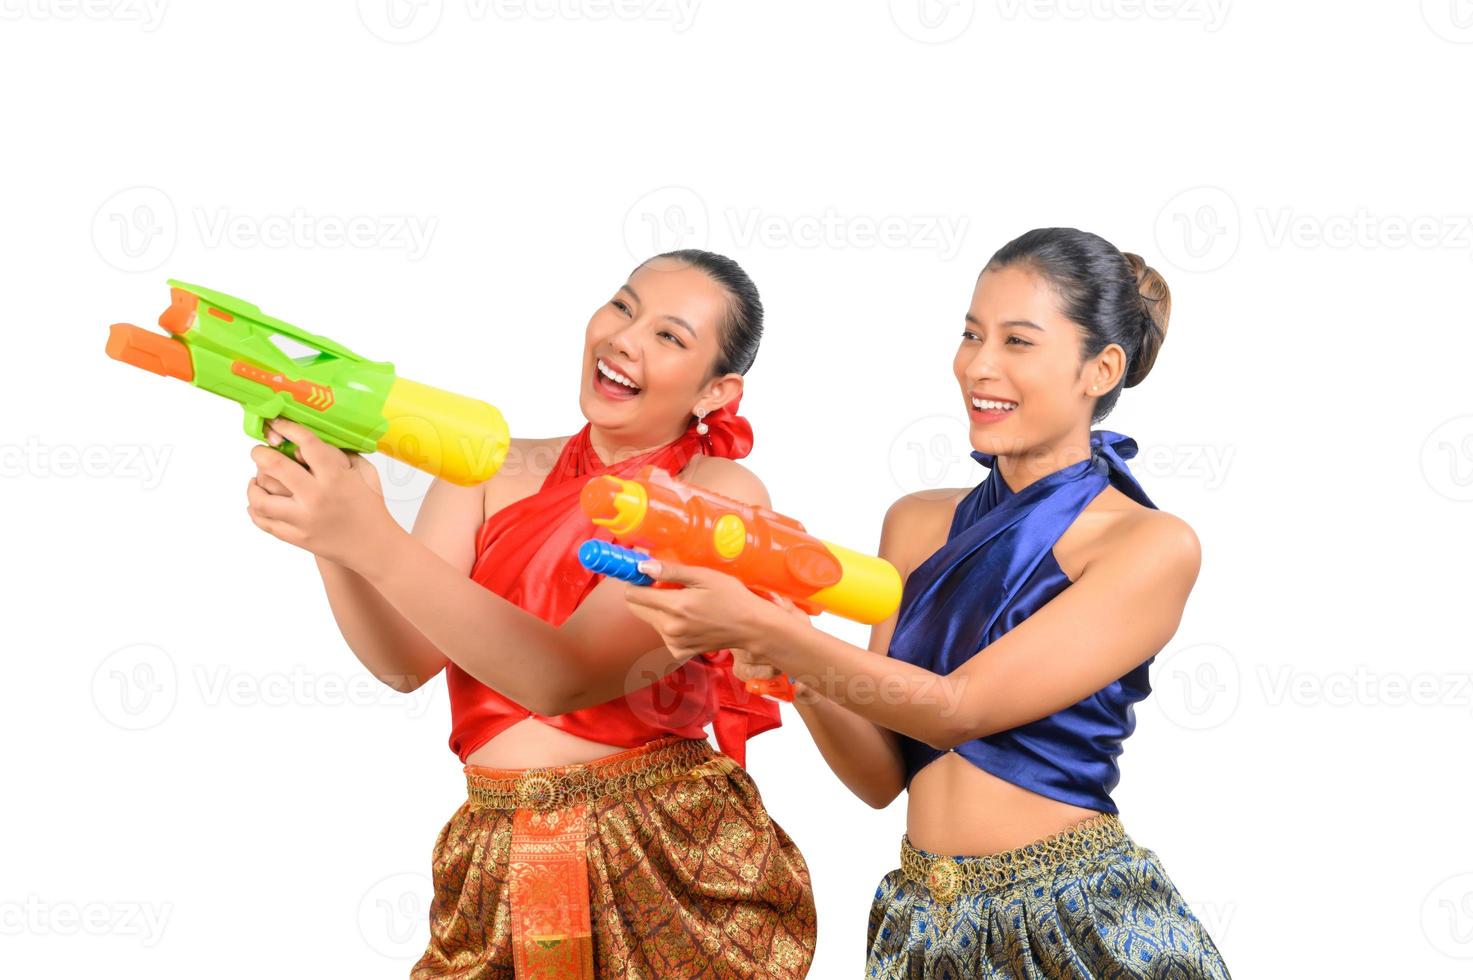 twee mooi vrouw in songkran festival met water geweer foto